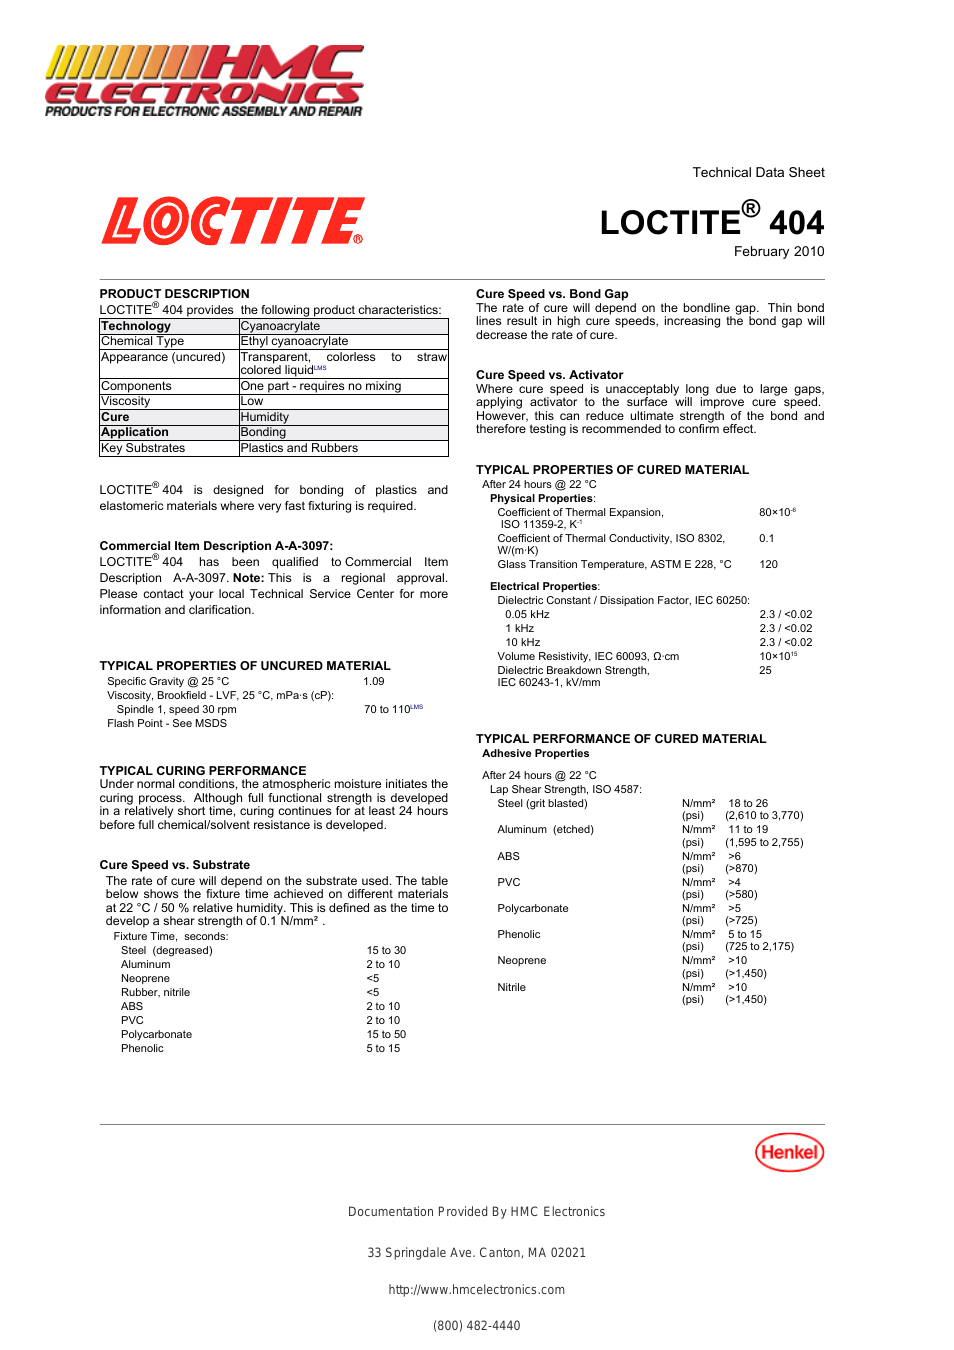 46551 Loctite 404 Quick Set Instant Adhesive